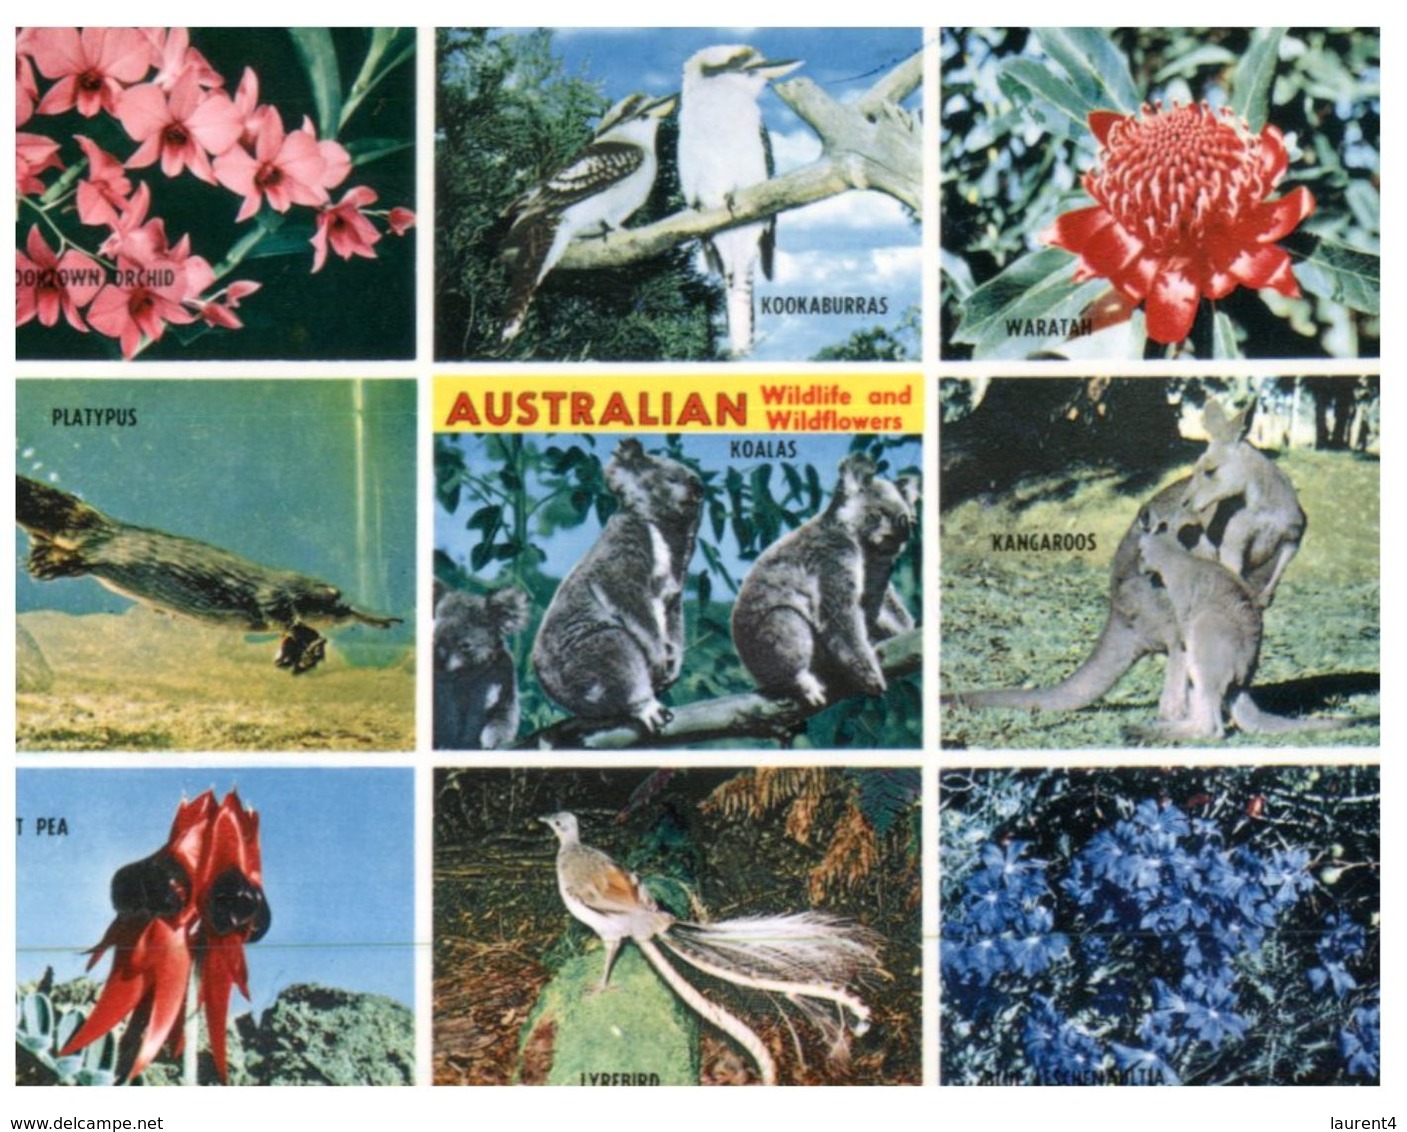 (200) Australia - Wildlife - - Outback